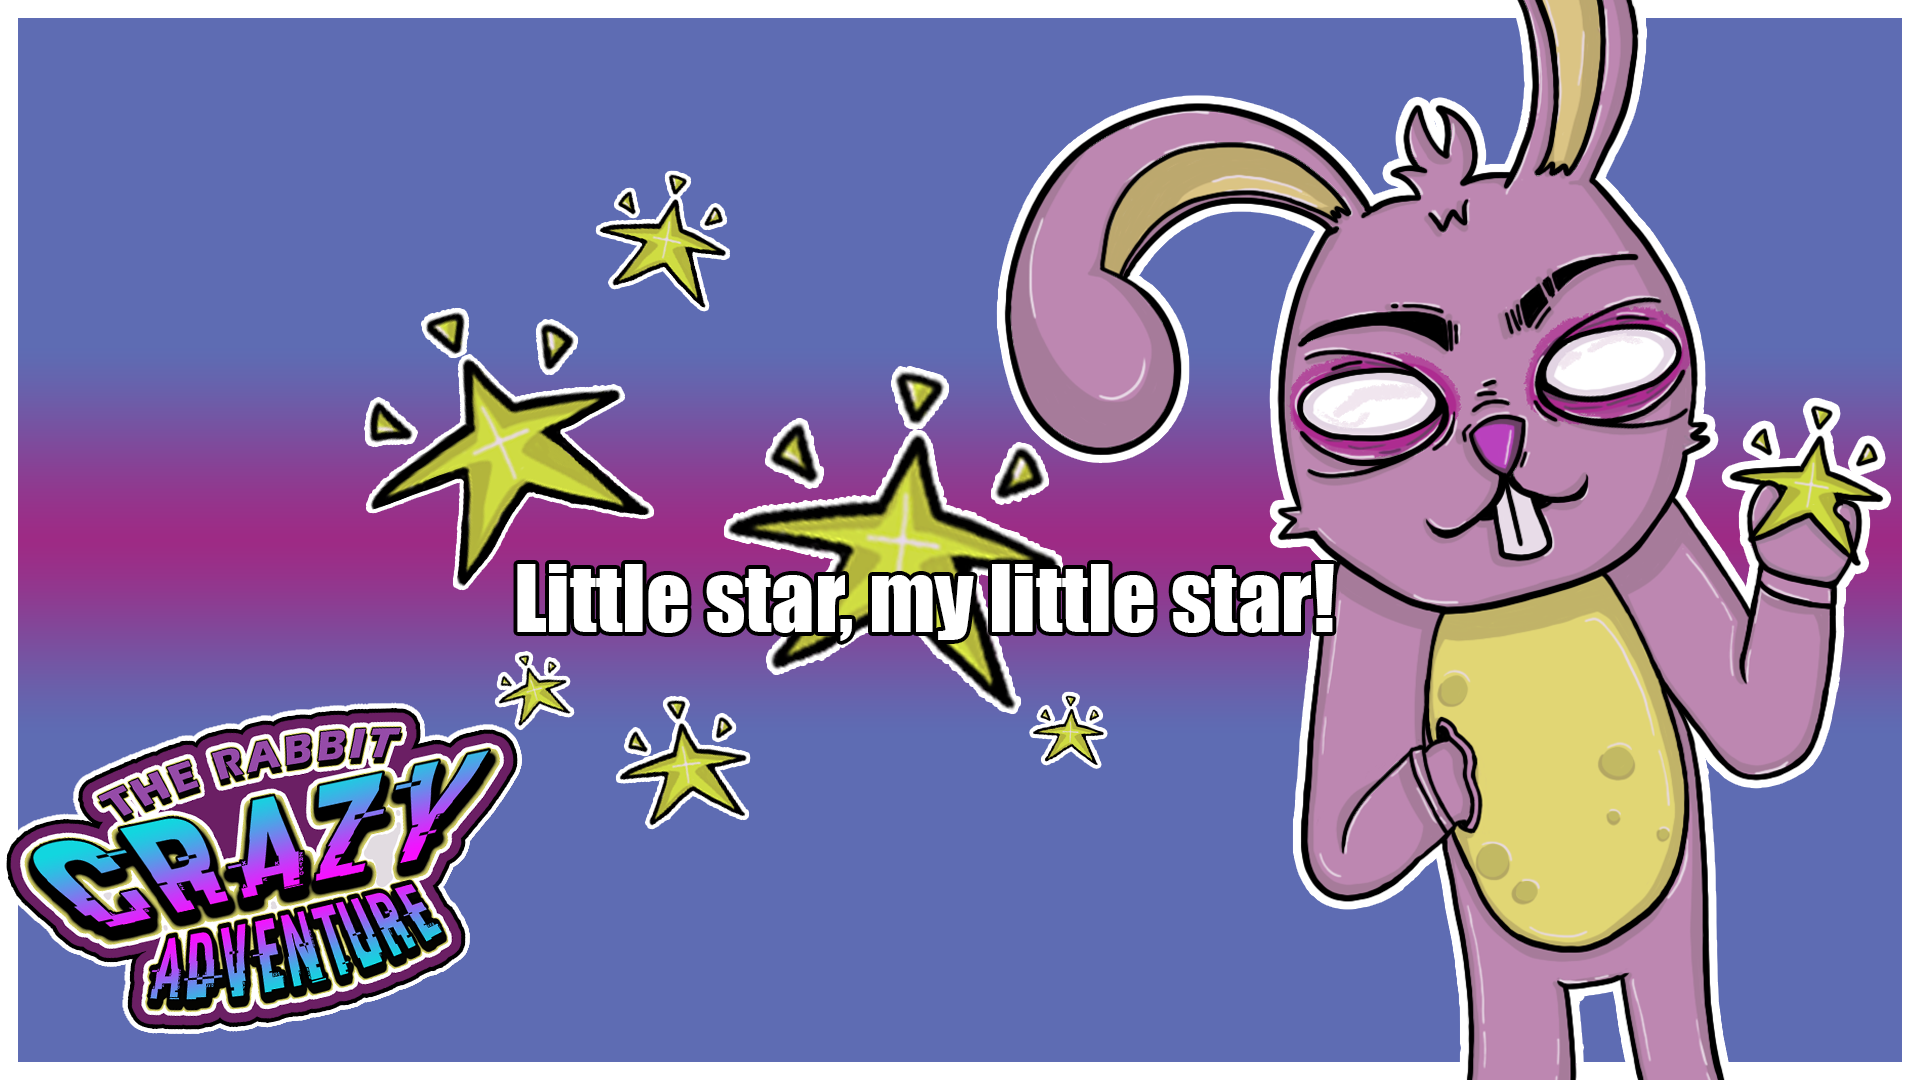 Little star, my little star!